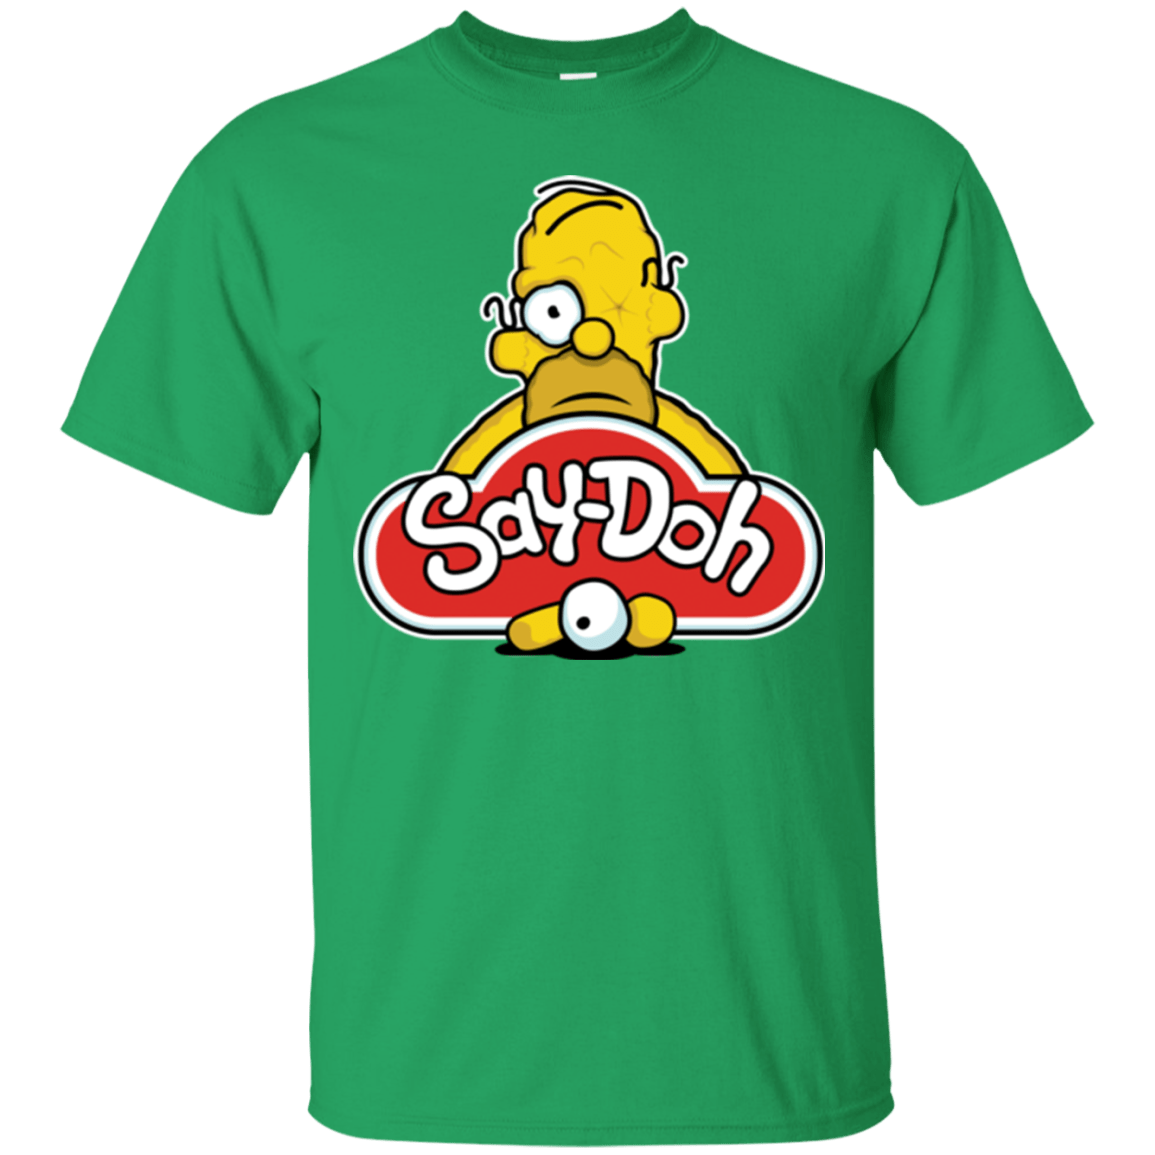 T-Shirts Irish Green / Small Saydoh T-Shirt